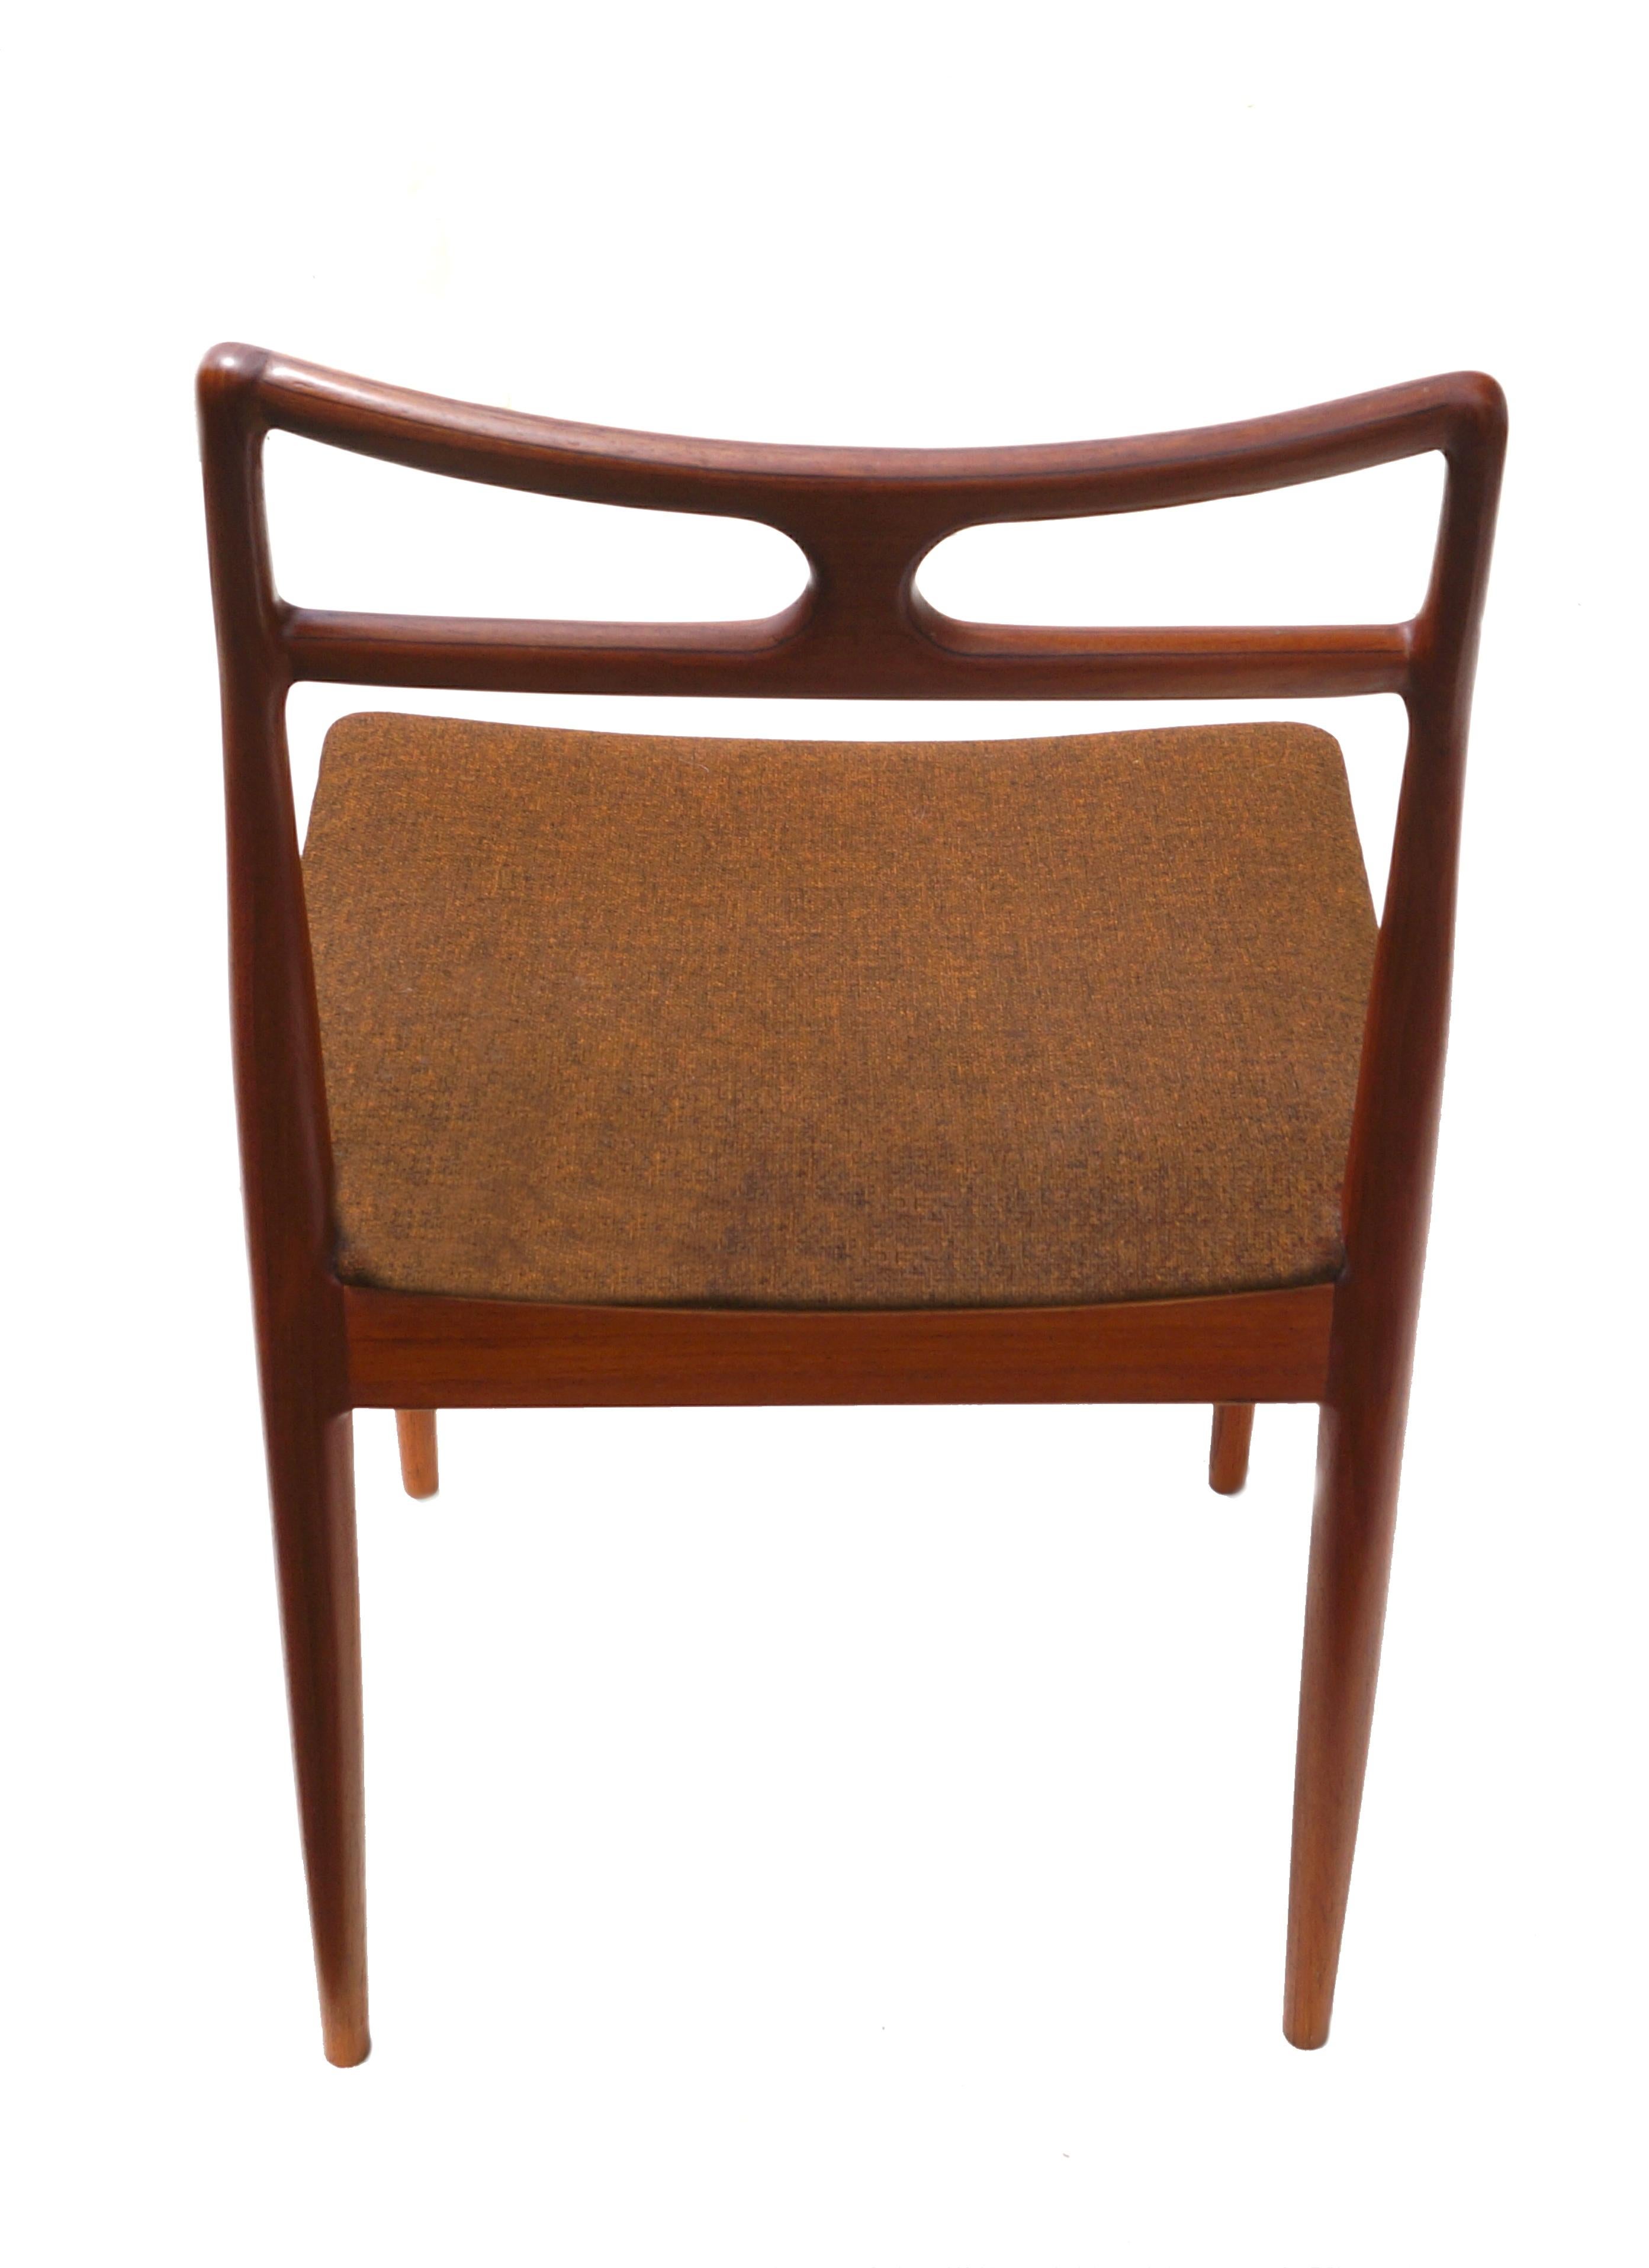 Set of 6 Johannes Andersen Teak Danish Modern Dining Room Chairs Denmark, 1960's For Sale 2